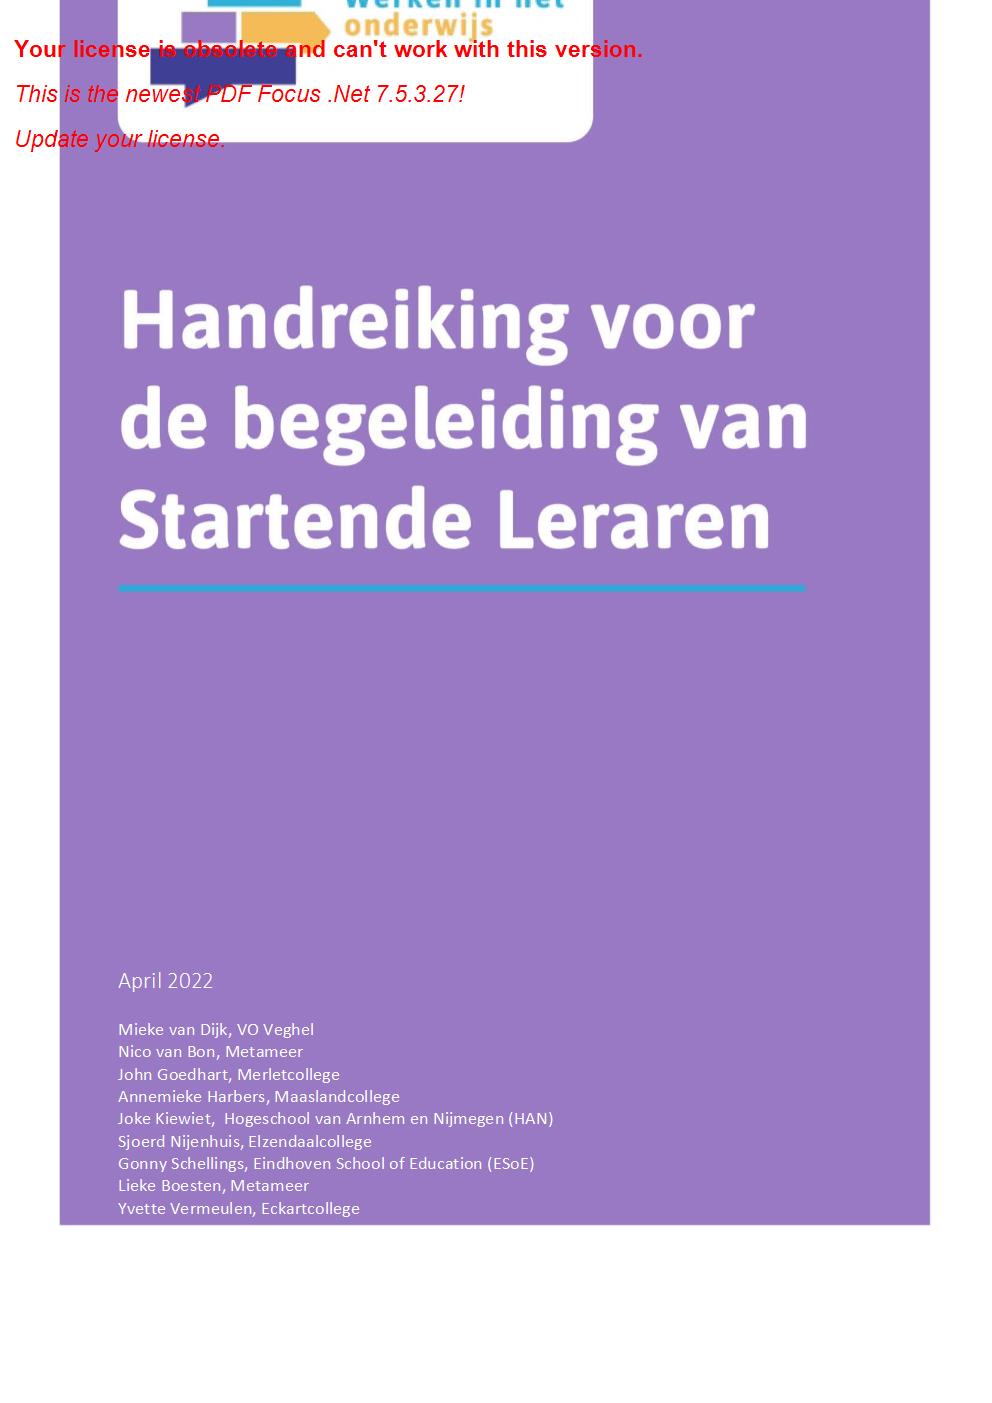 Handreiking begeleiding startende leraren RAP-regio Noordoost Brabant - april 2022